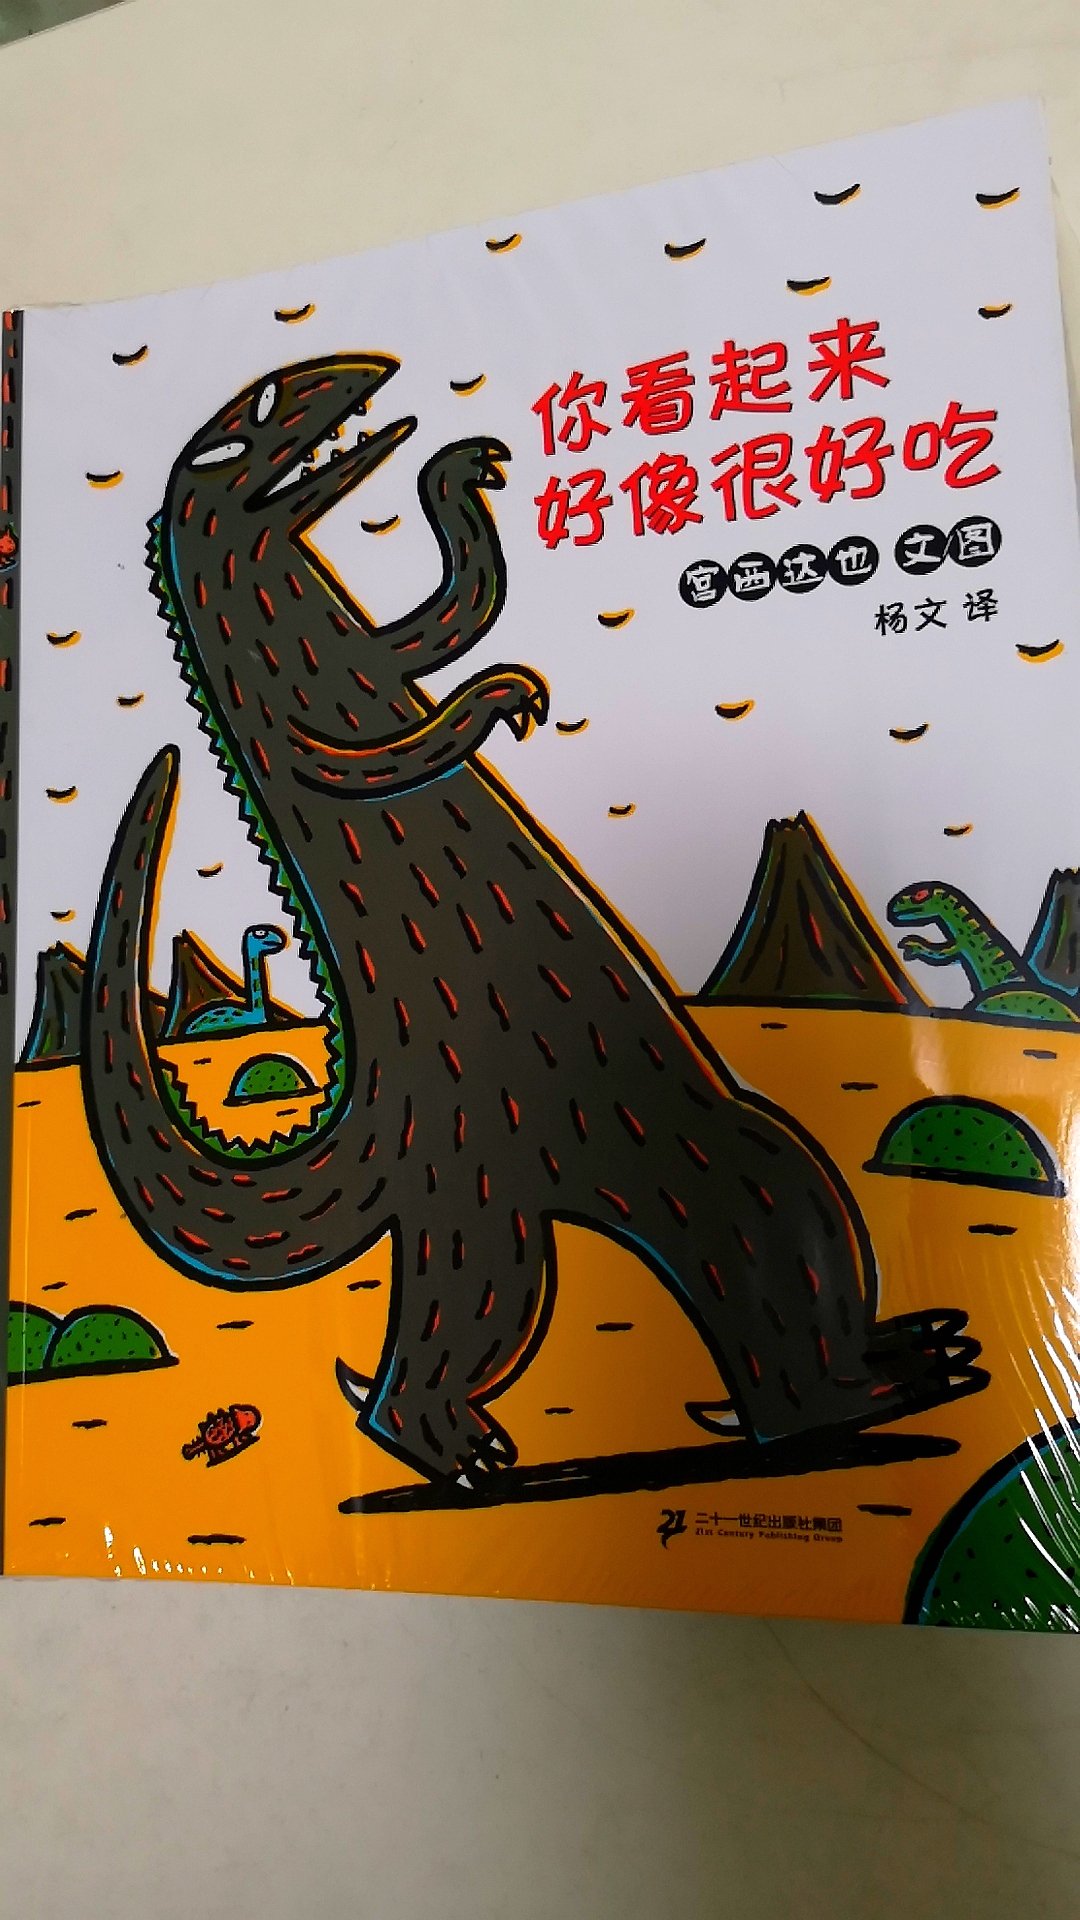 很不错的书，希望小朋友会喜欢大恐龙。